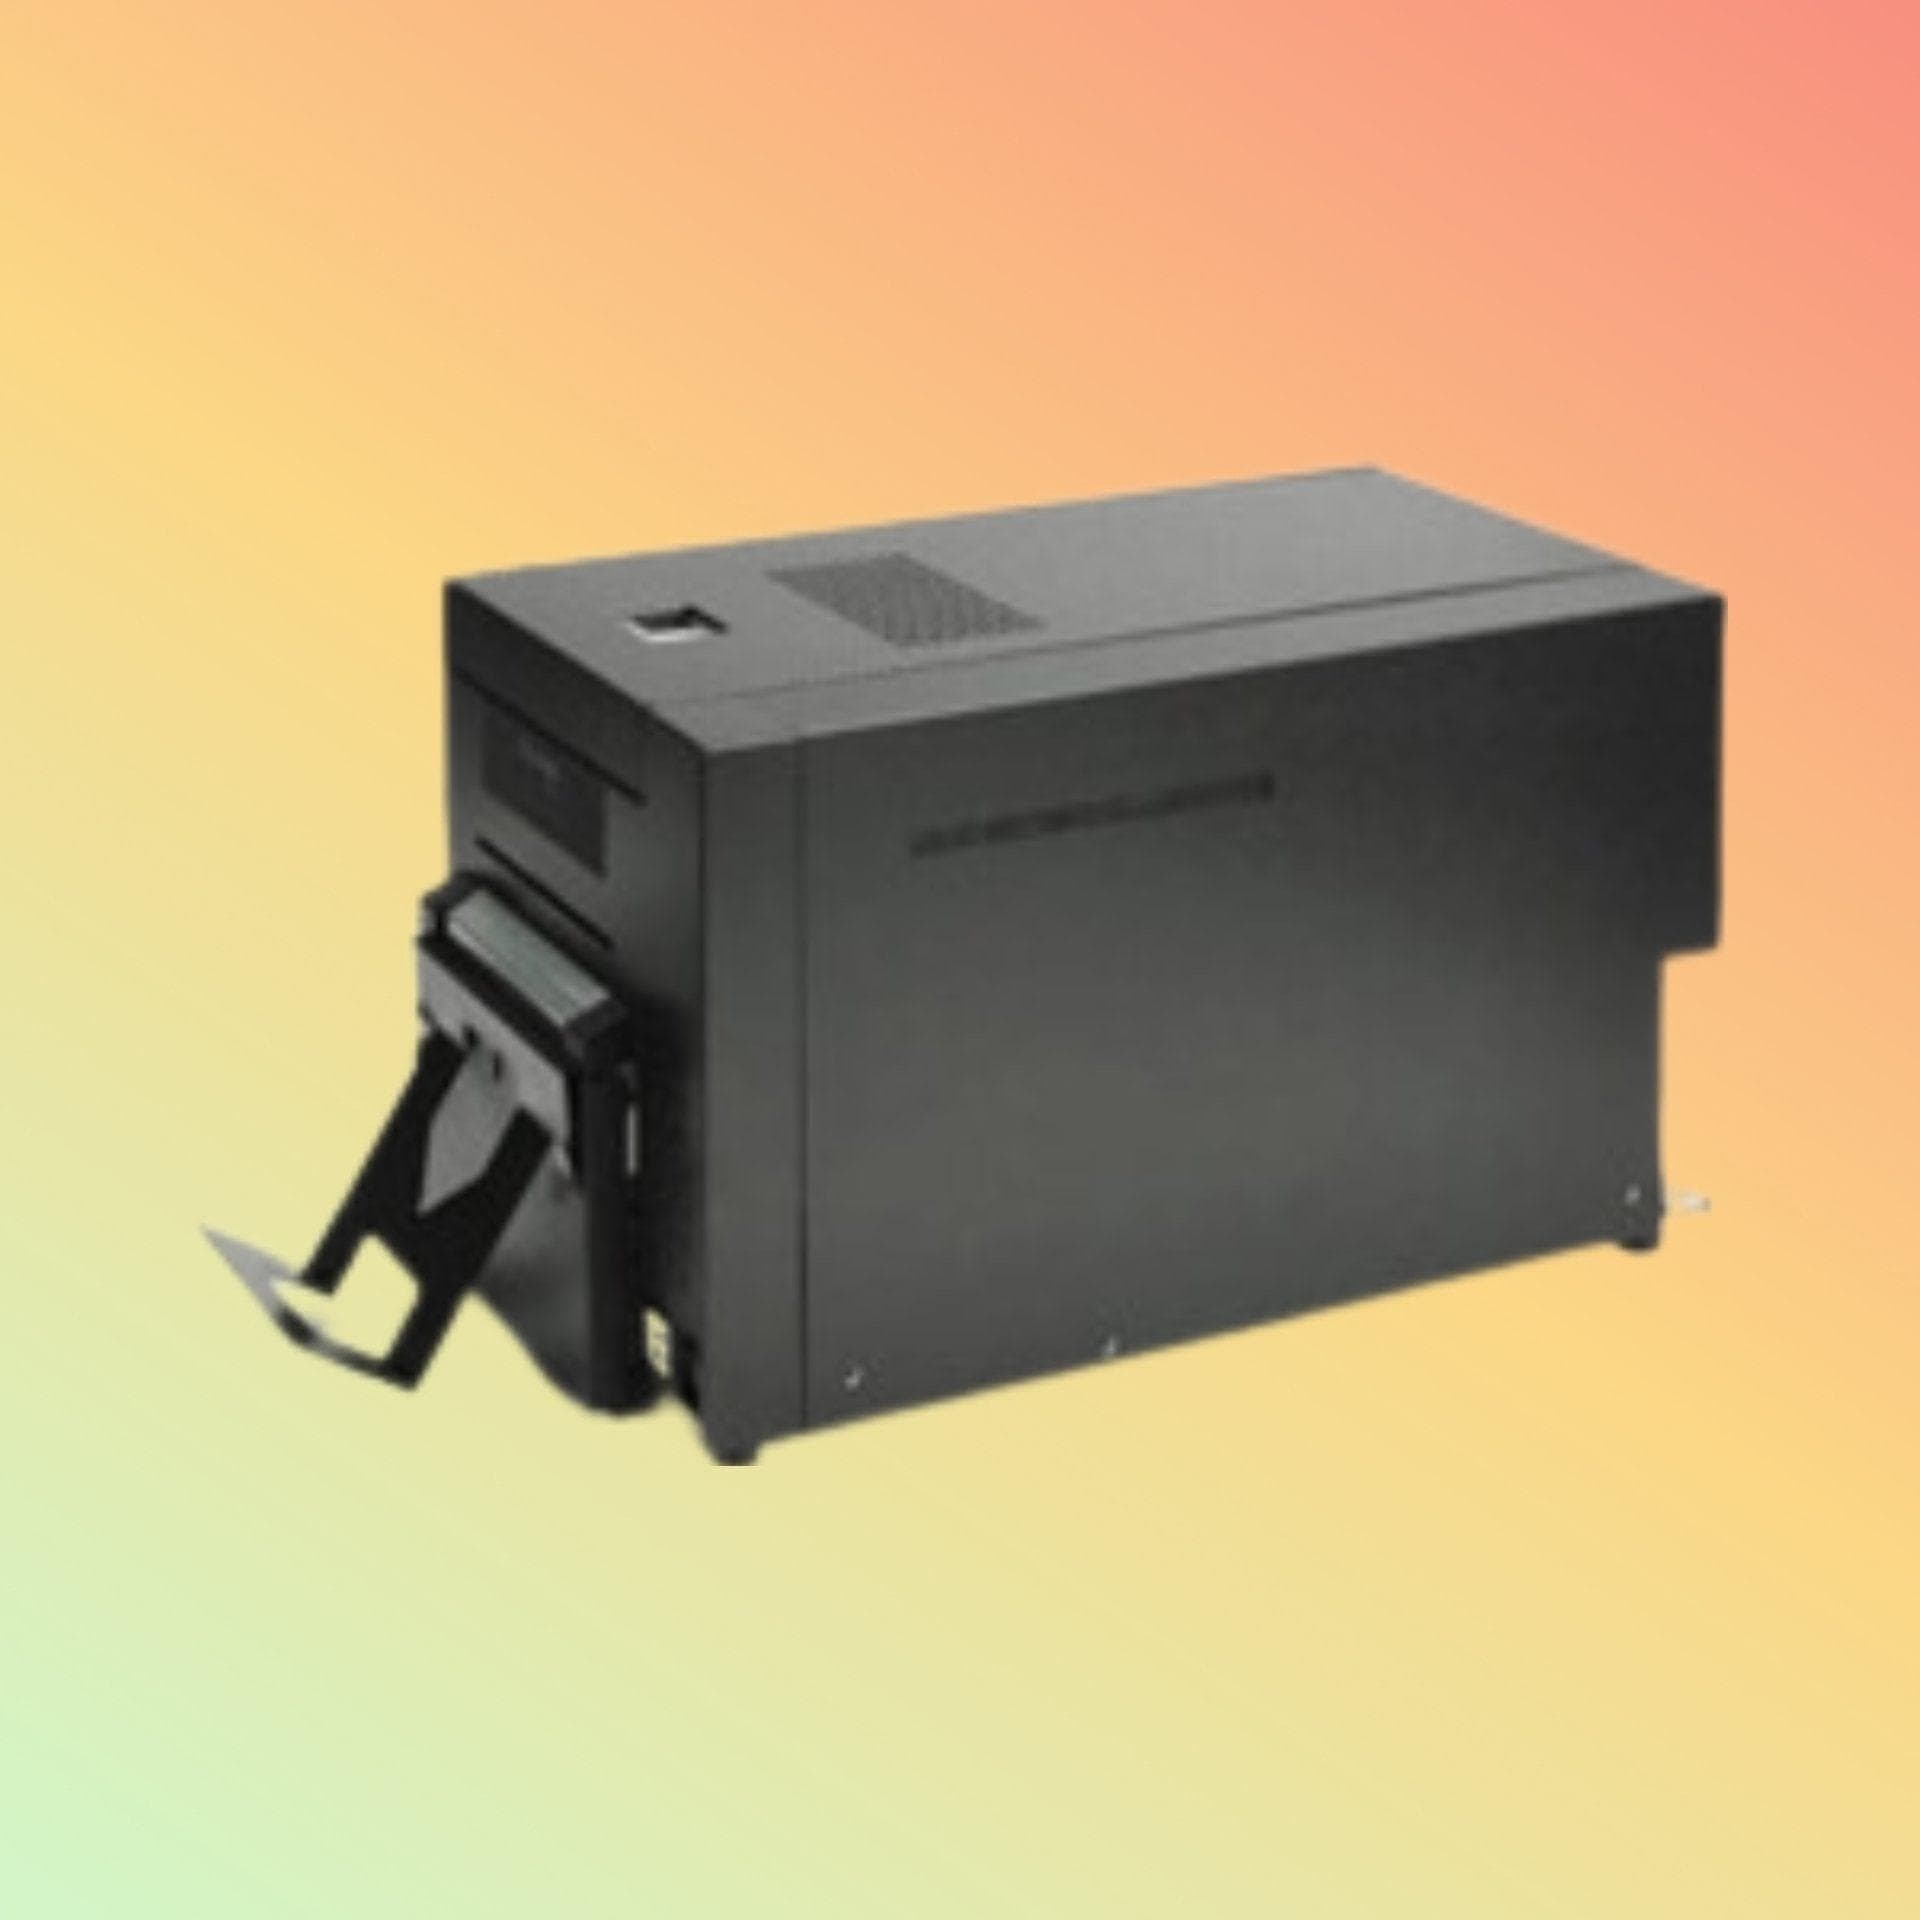 Idcard Printer - Zebra ZC10L Large-Format Printer - Neotech